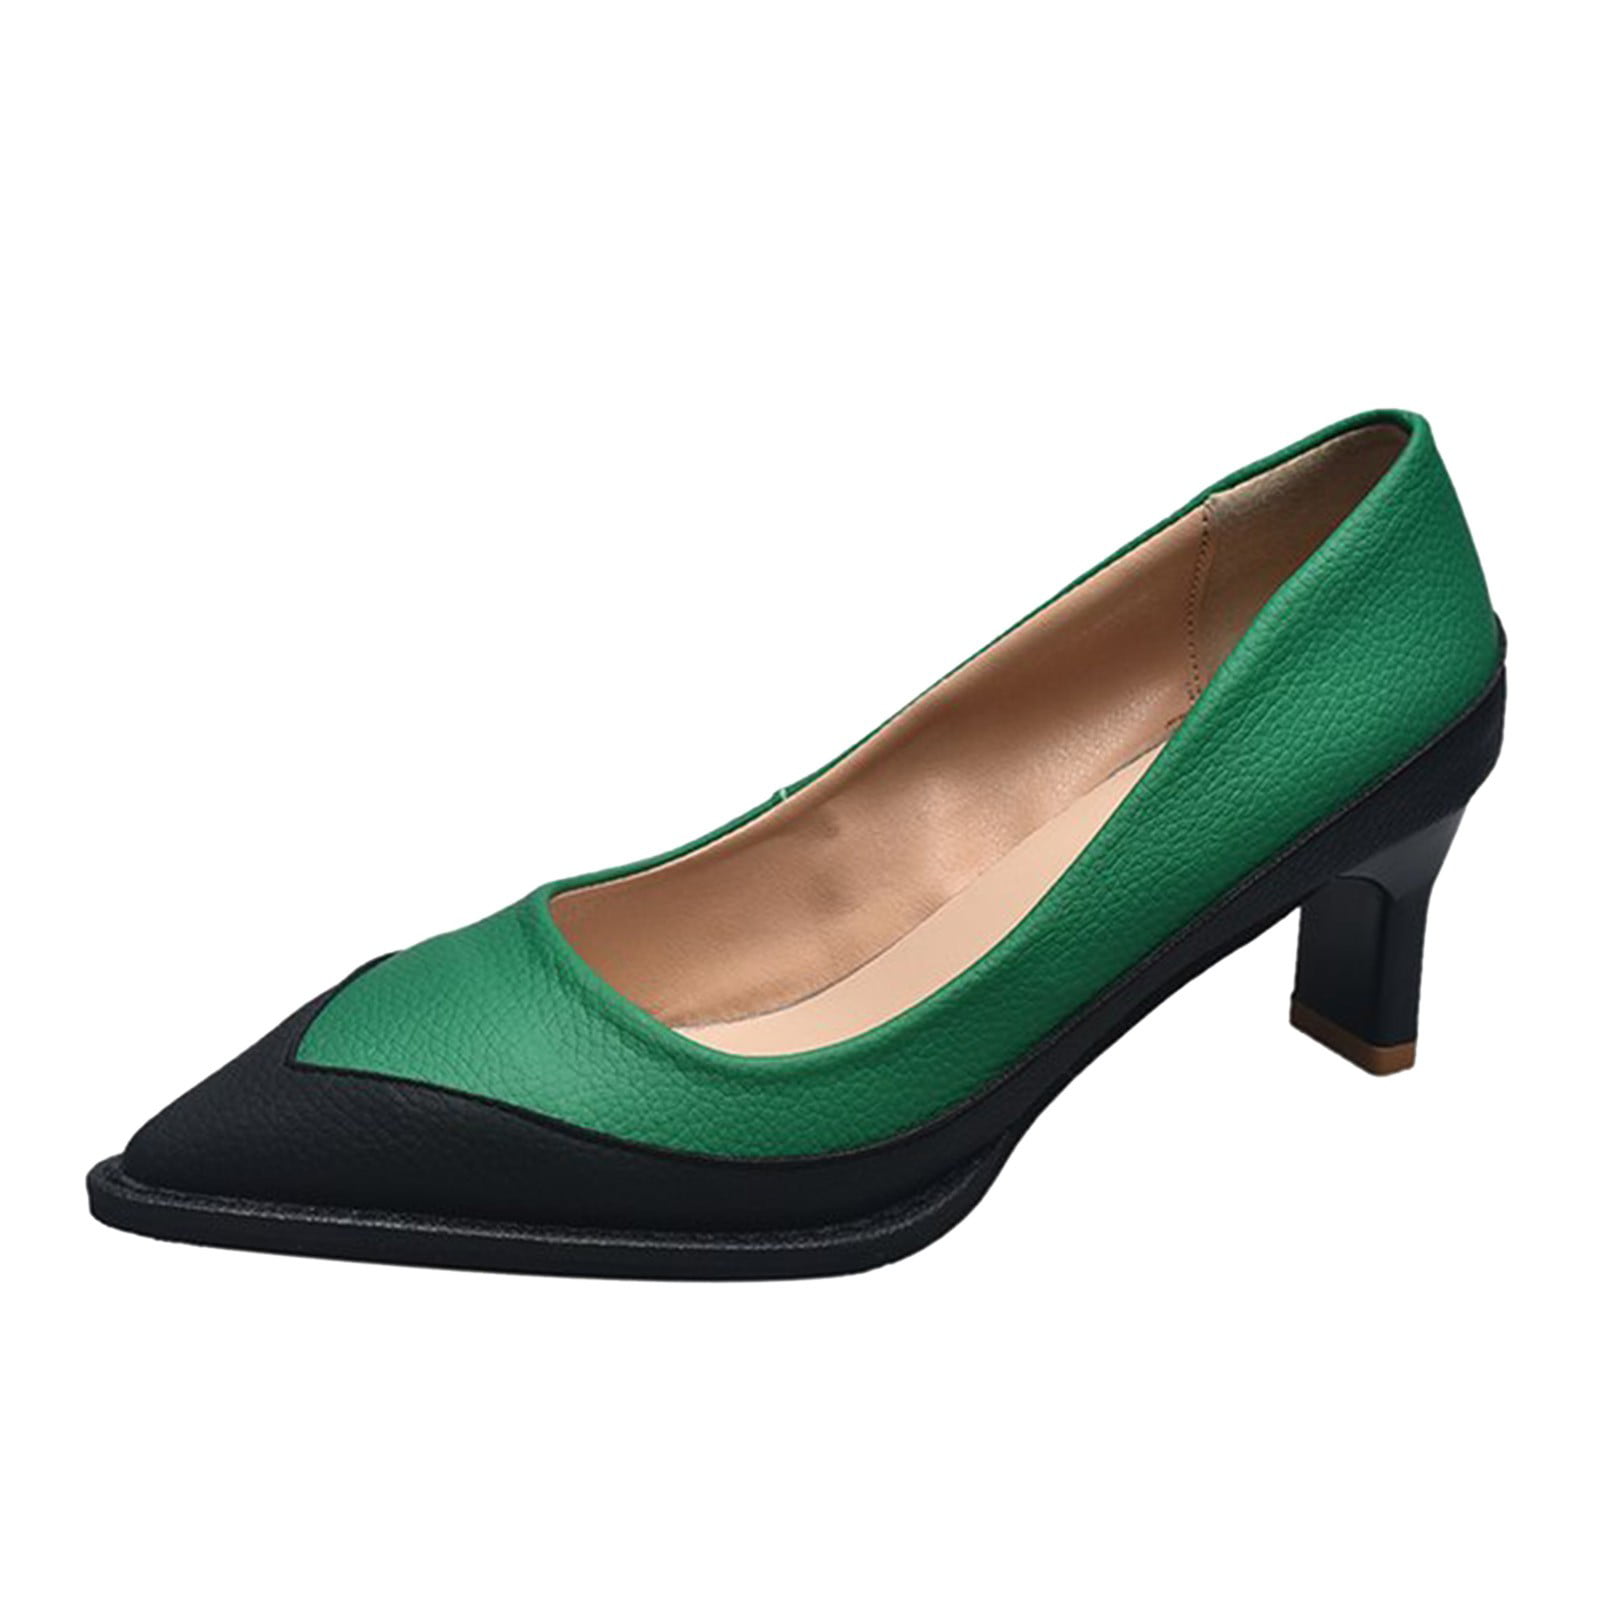 9 Best Emerald green heels ideas | heels, green heels, sandals heels